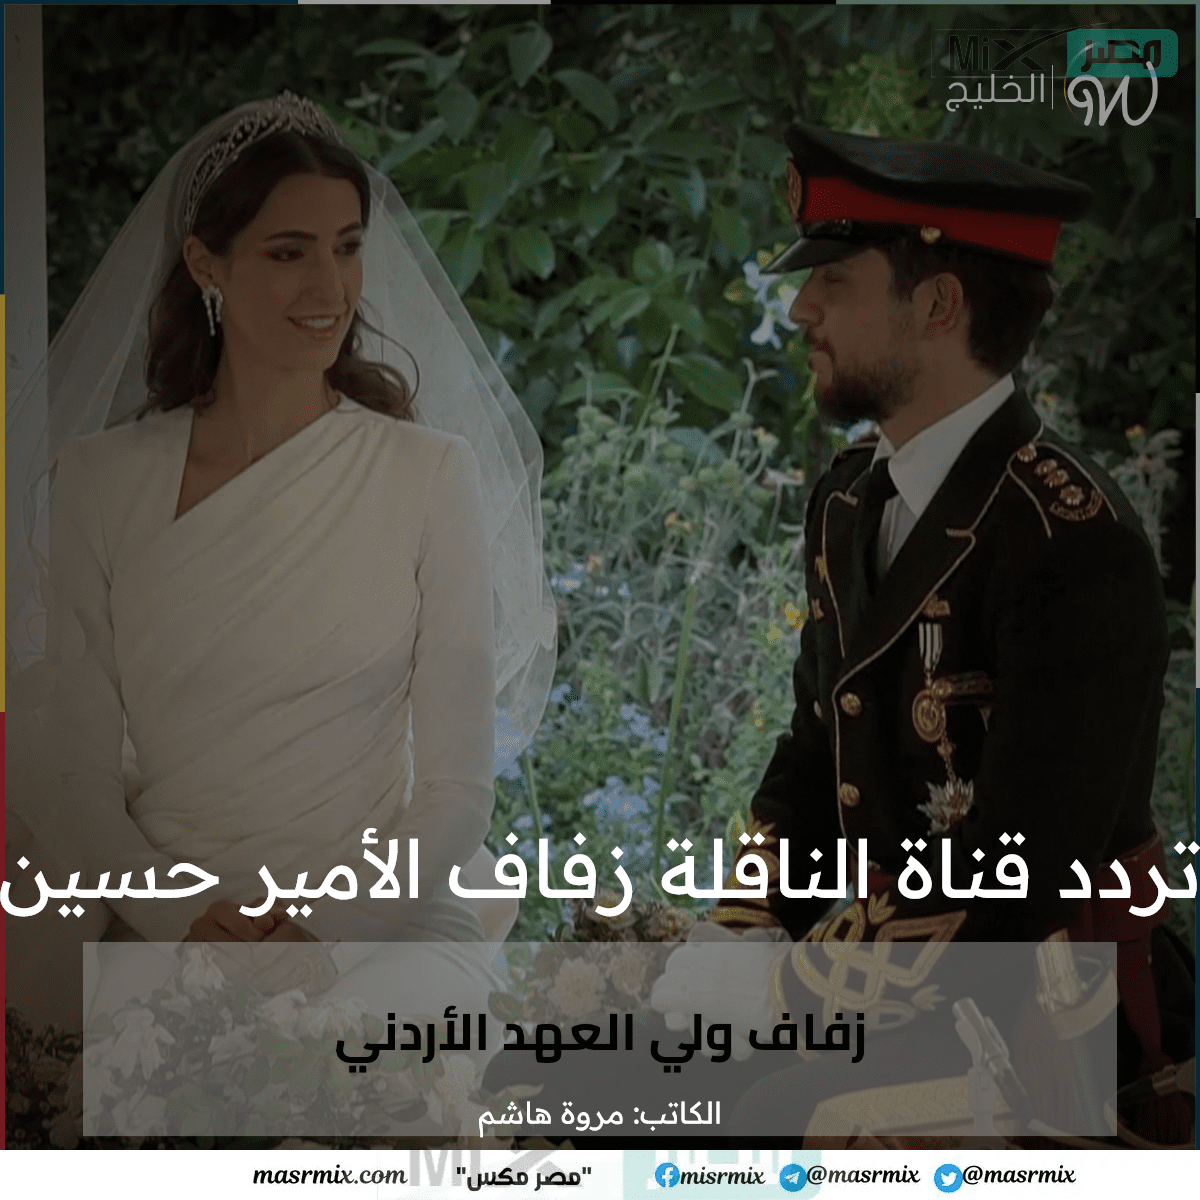 “الصور الرسمية الأولي” تردد قناة المملكة الأردنية الناقلة زفاف الأمير حسين والانسة رجوة  آل سيف